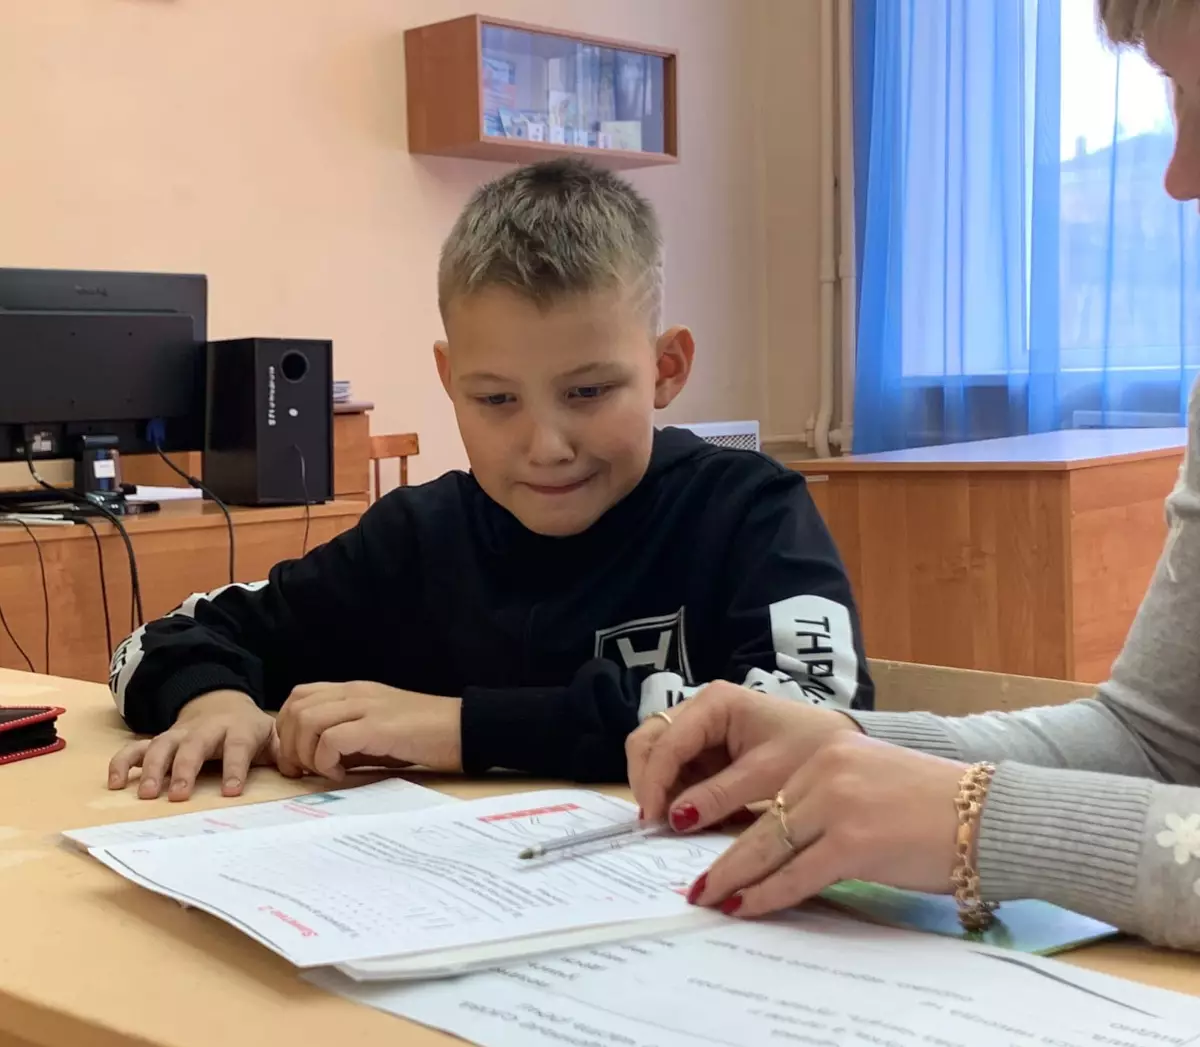 С 1 сентября 2023 года все российские школы преподают русский язык и литературу по единой федеральной программе. А с 1 сентября 2025 года дети начнут проходить эти дисциплины по единому учебнику.